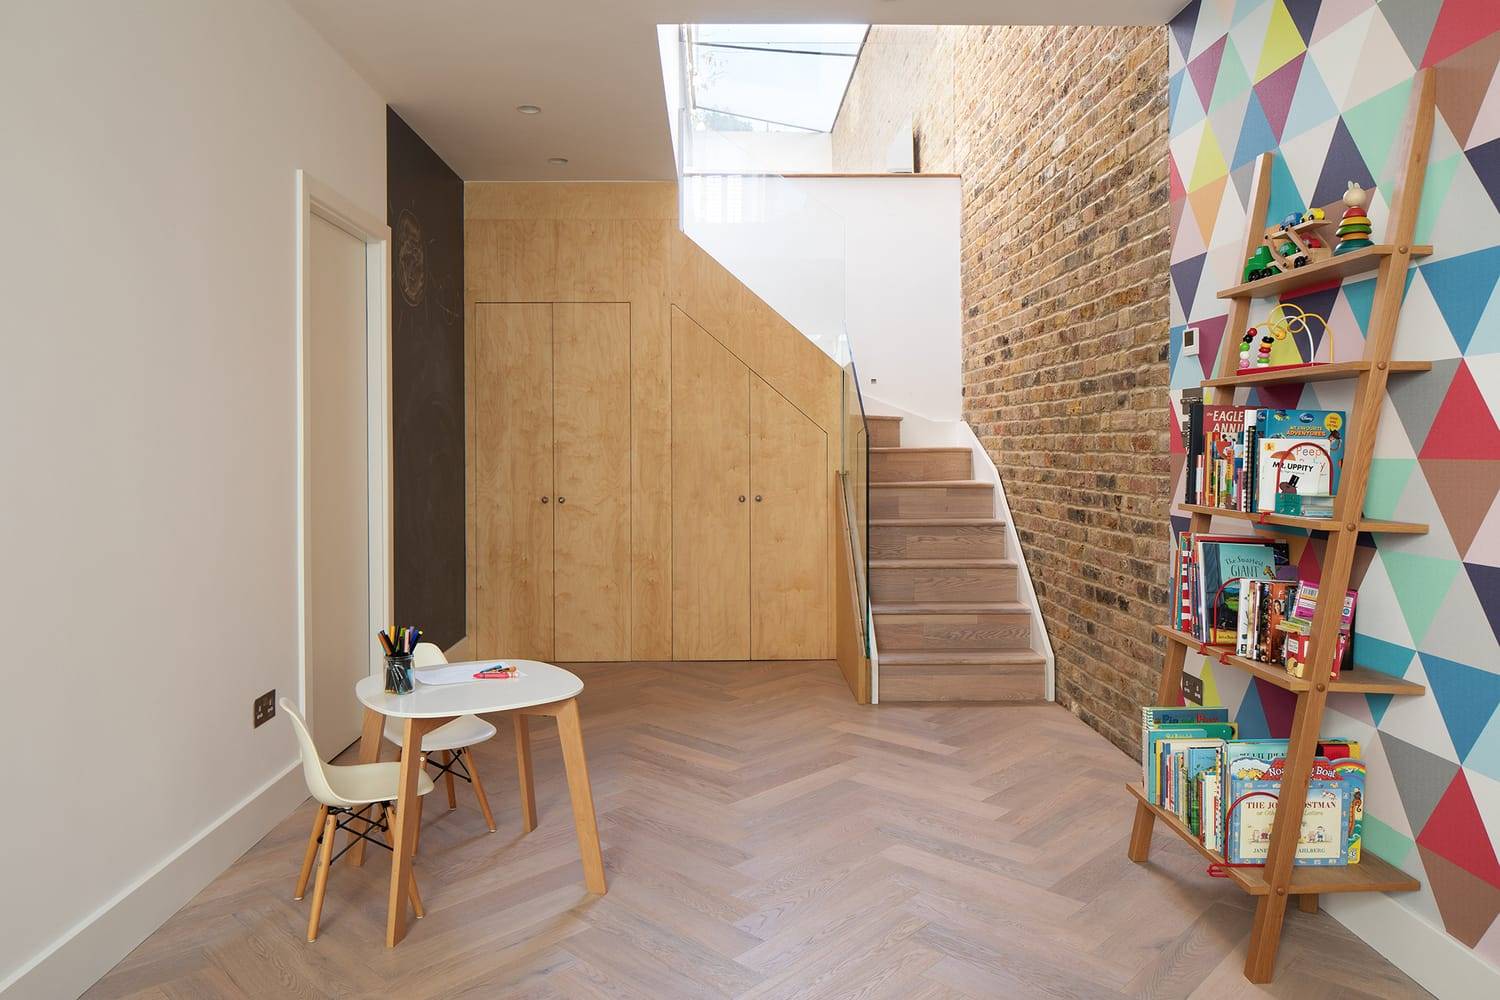 Casa en Chivalry Road (Londres), por Sketch Architects.